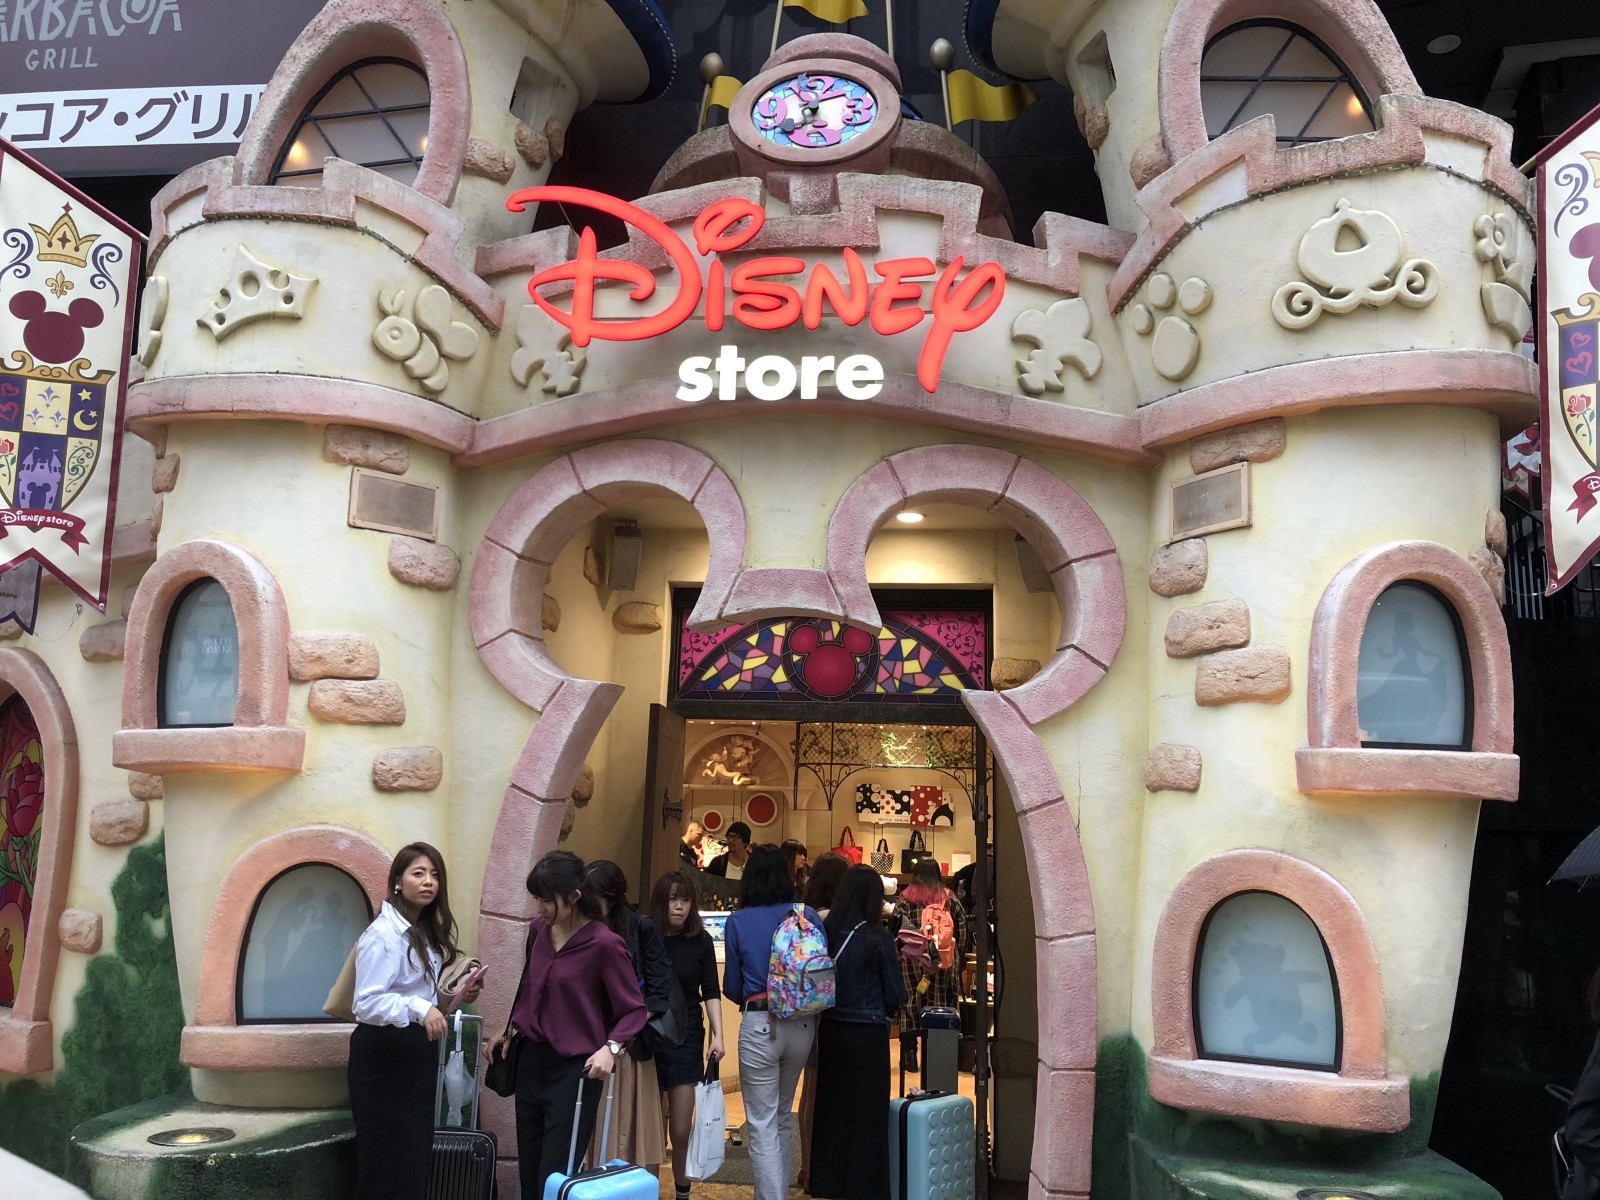 Disney Store in Shibuya 